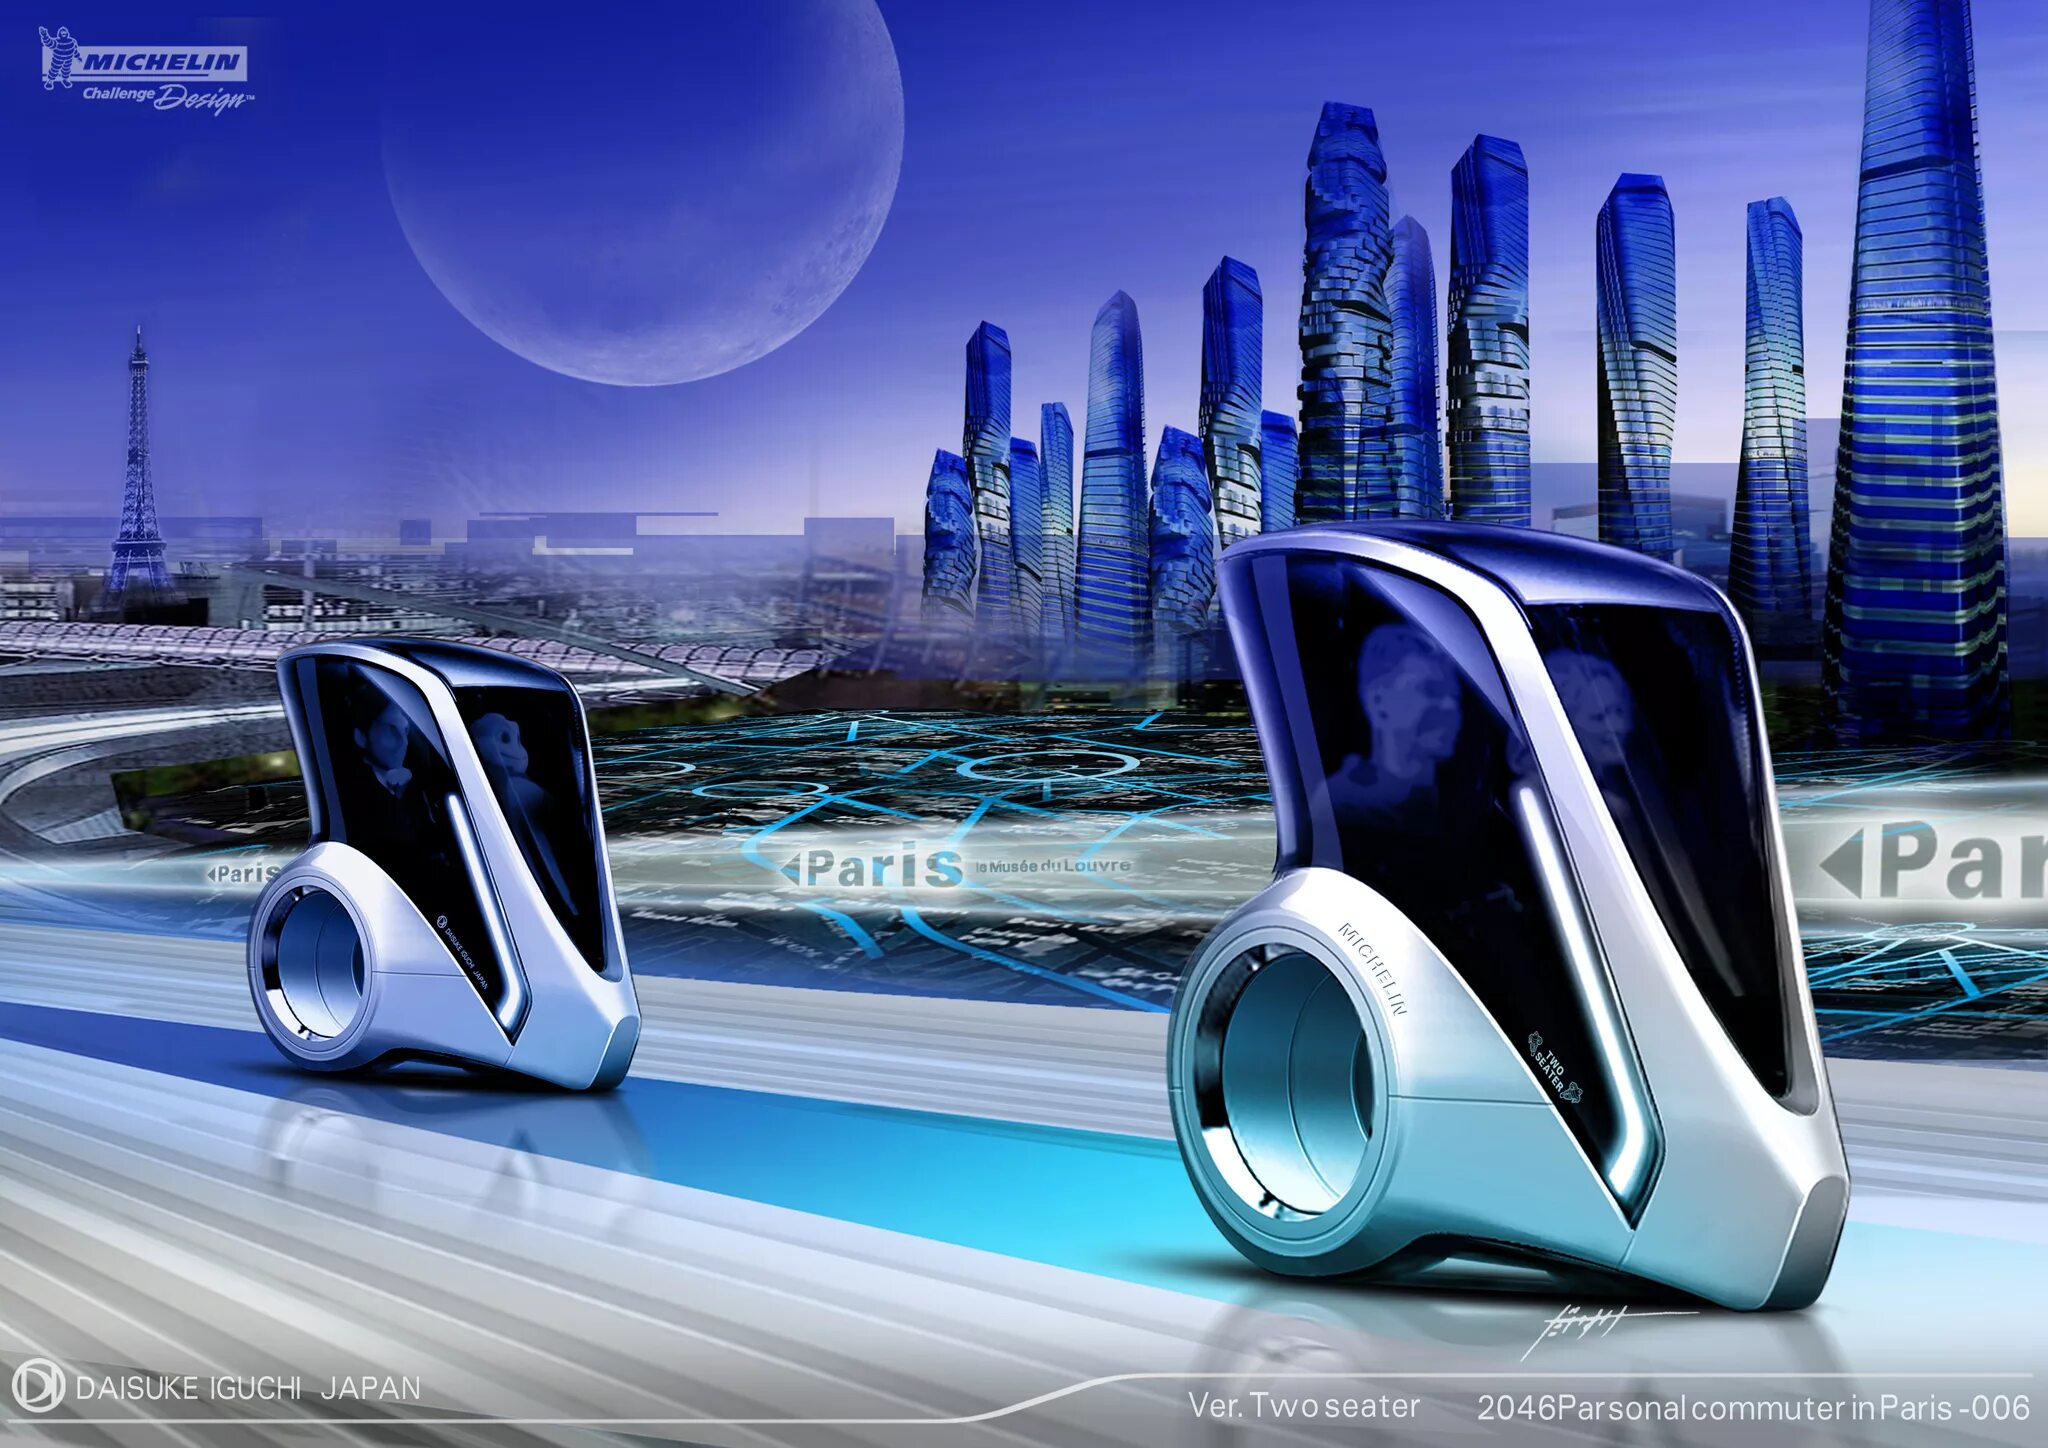 Средство будущее. Транспорт будущего. Городской транспорт будущего. Транспорт в будущем. Городской автомобиль будущего.